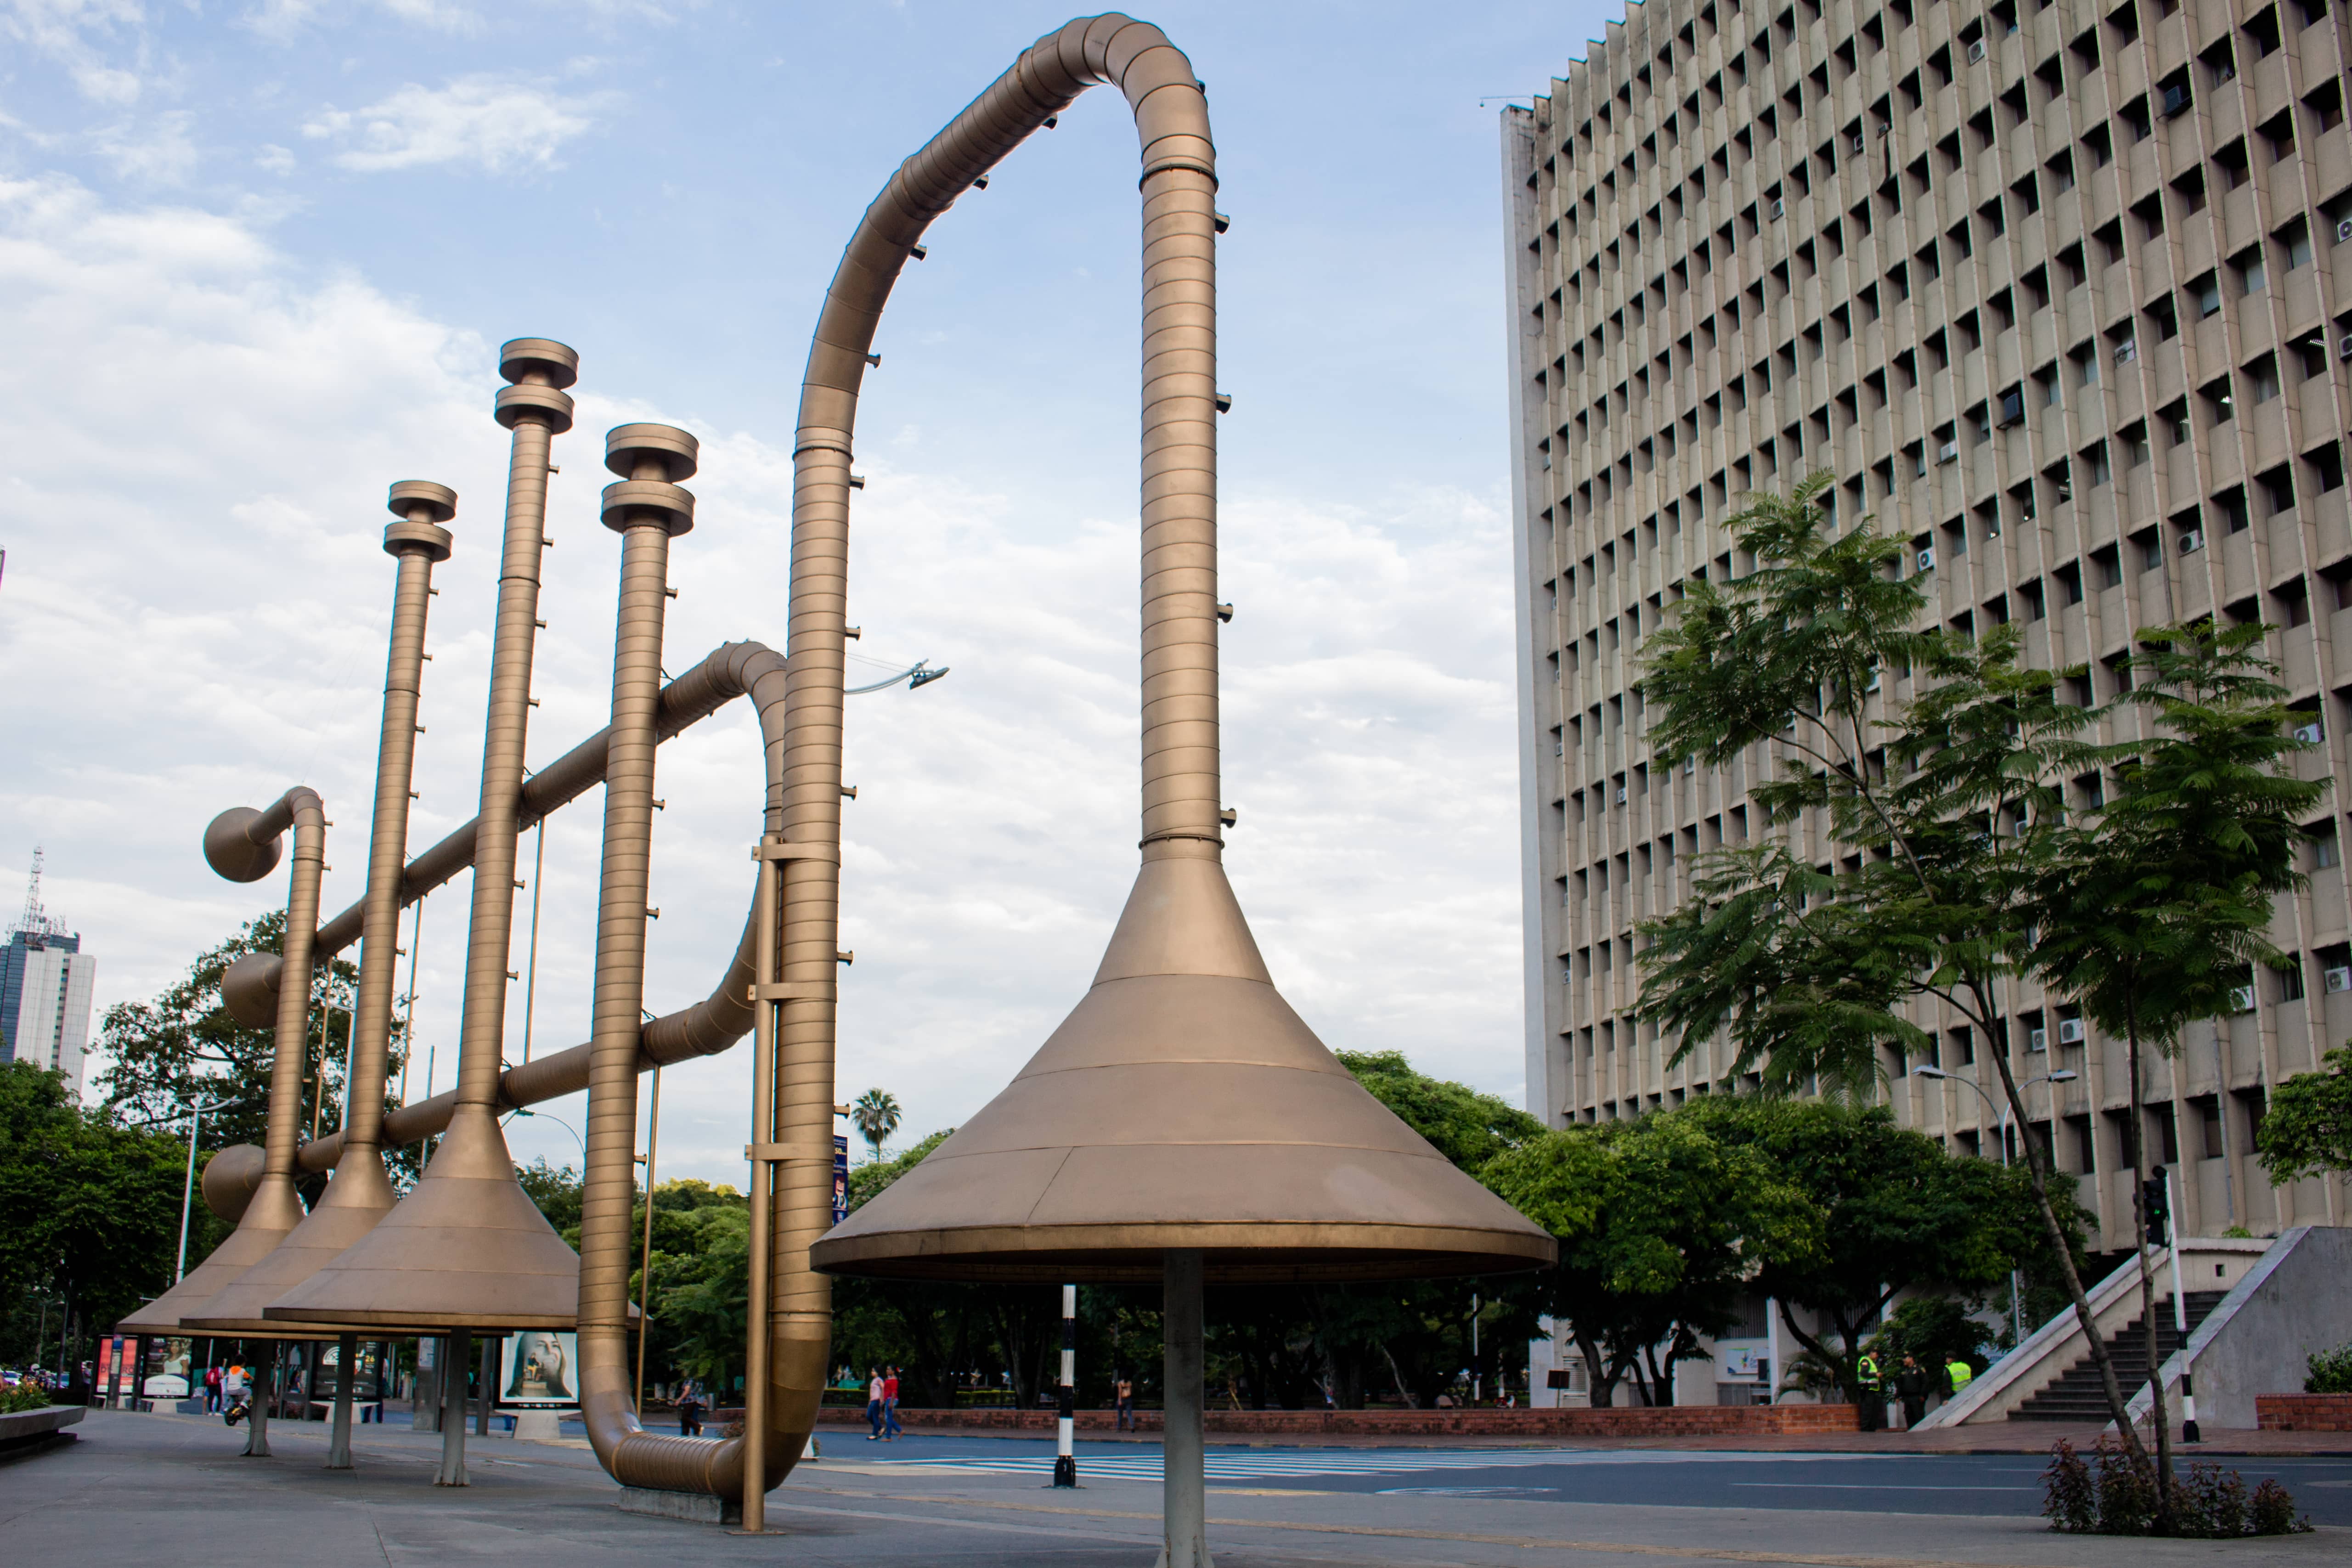 Jairo Varela Monument. By Shutterstock.